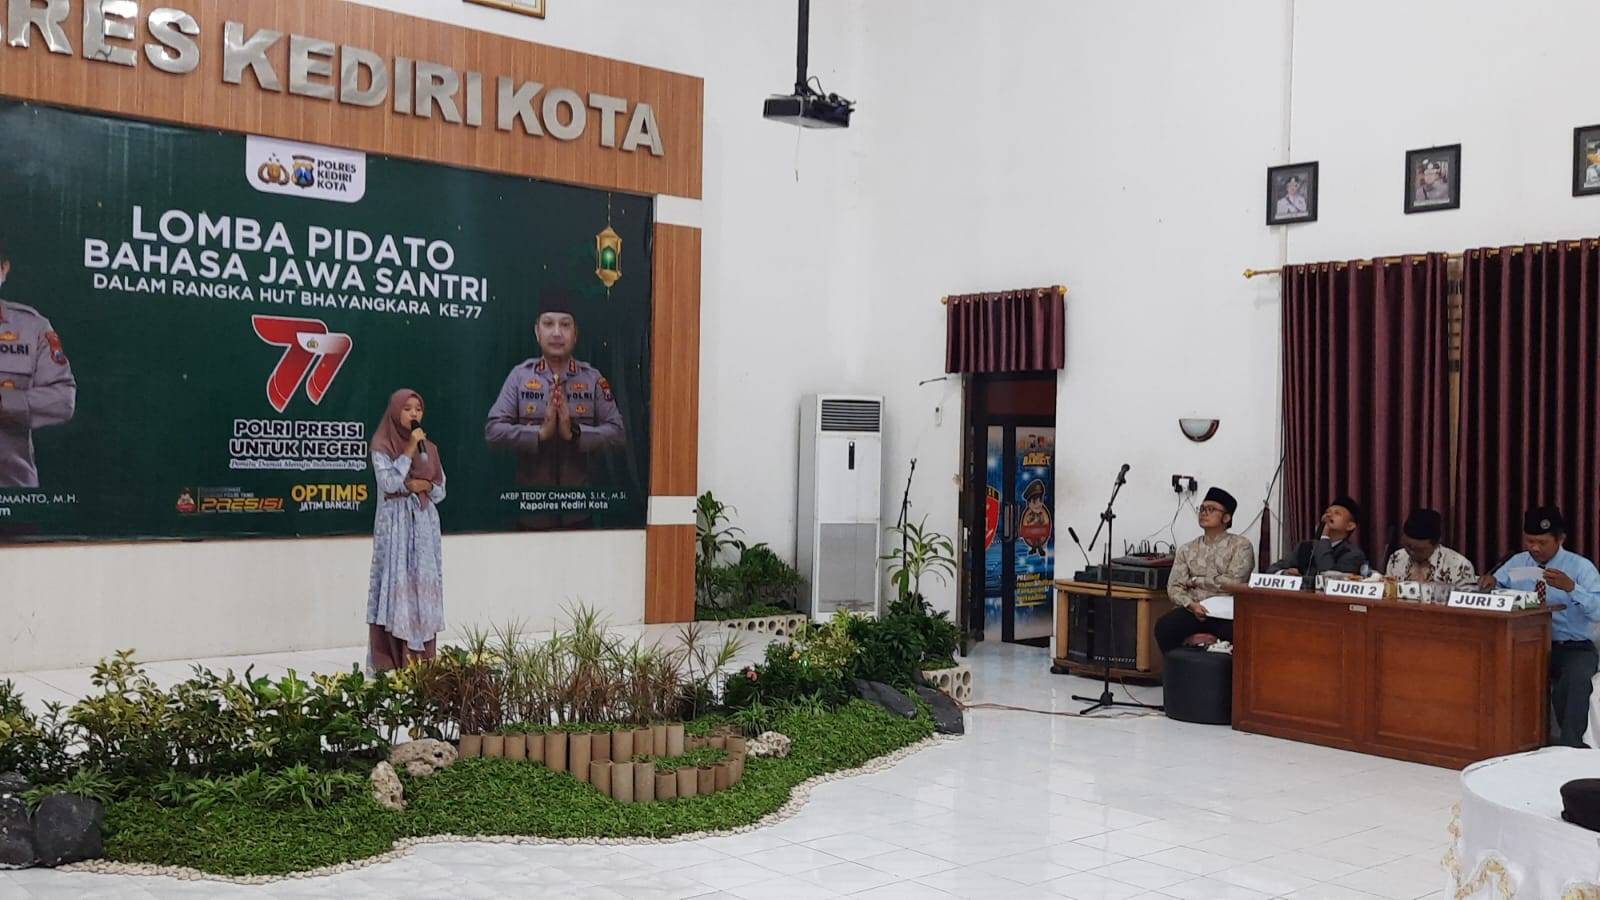 Pidato Bahasa Jawa